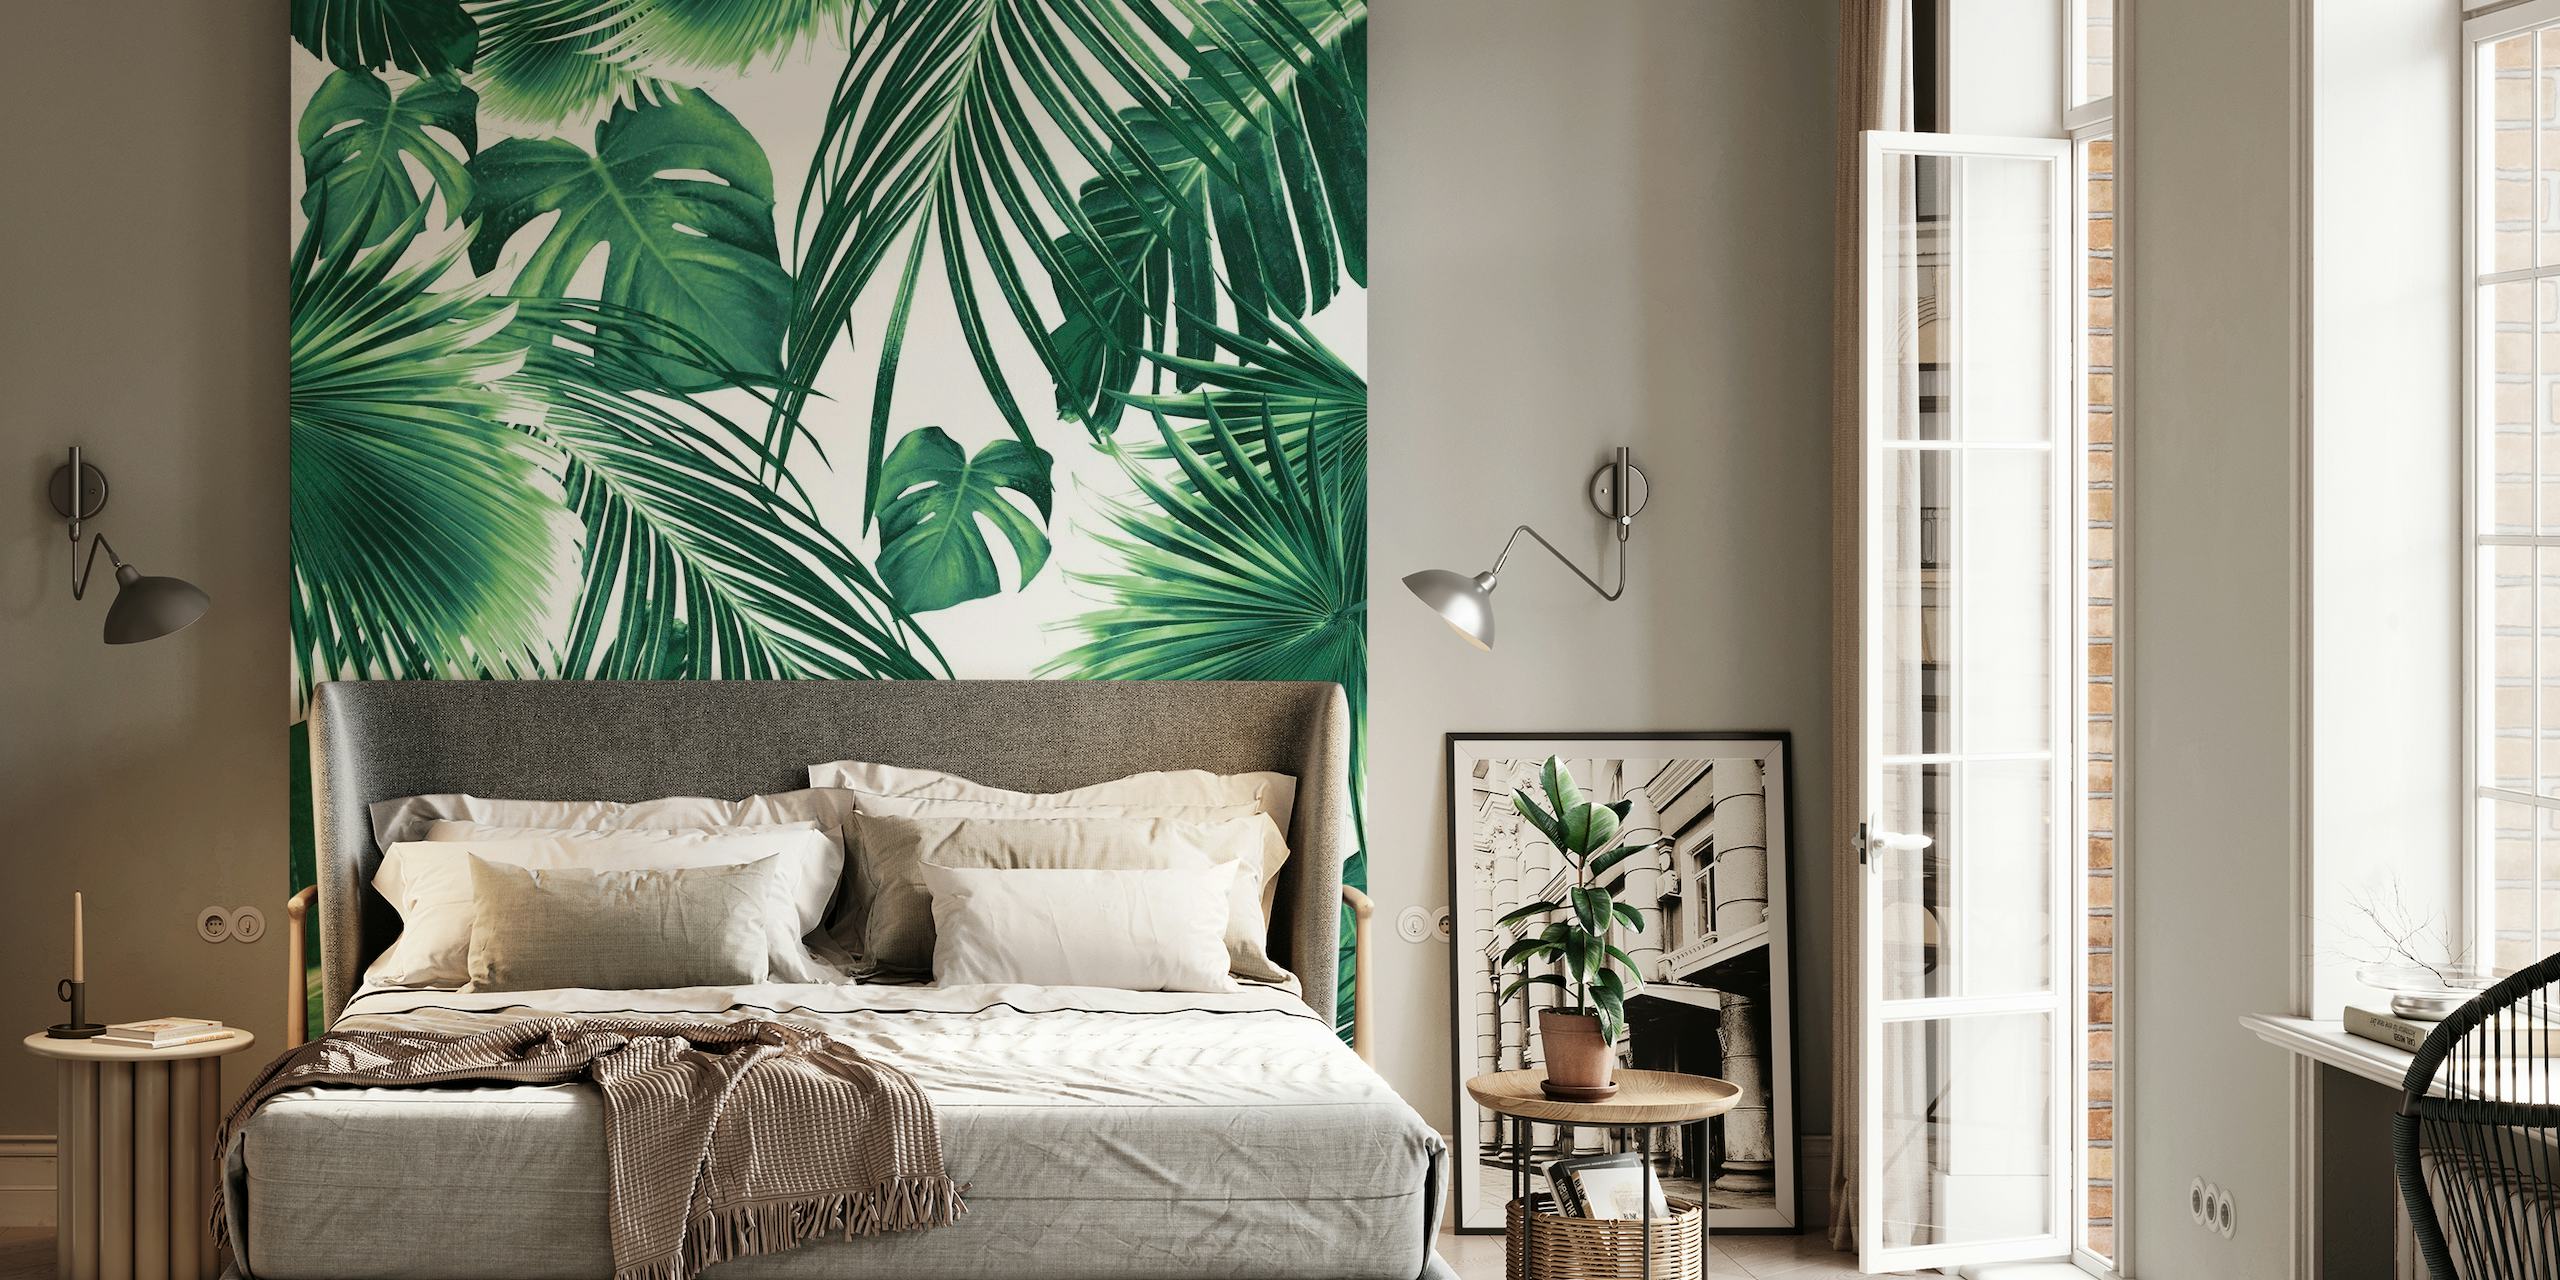 Raskošni zidni mural s gustim uzorkom lišća tropske džungle u nijansama zelene